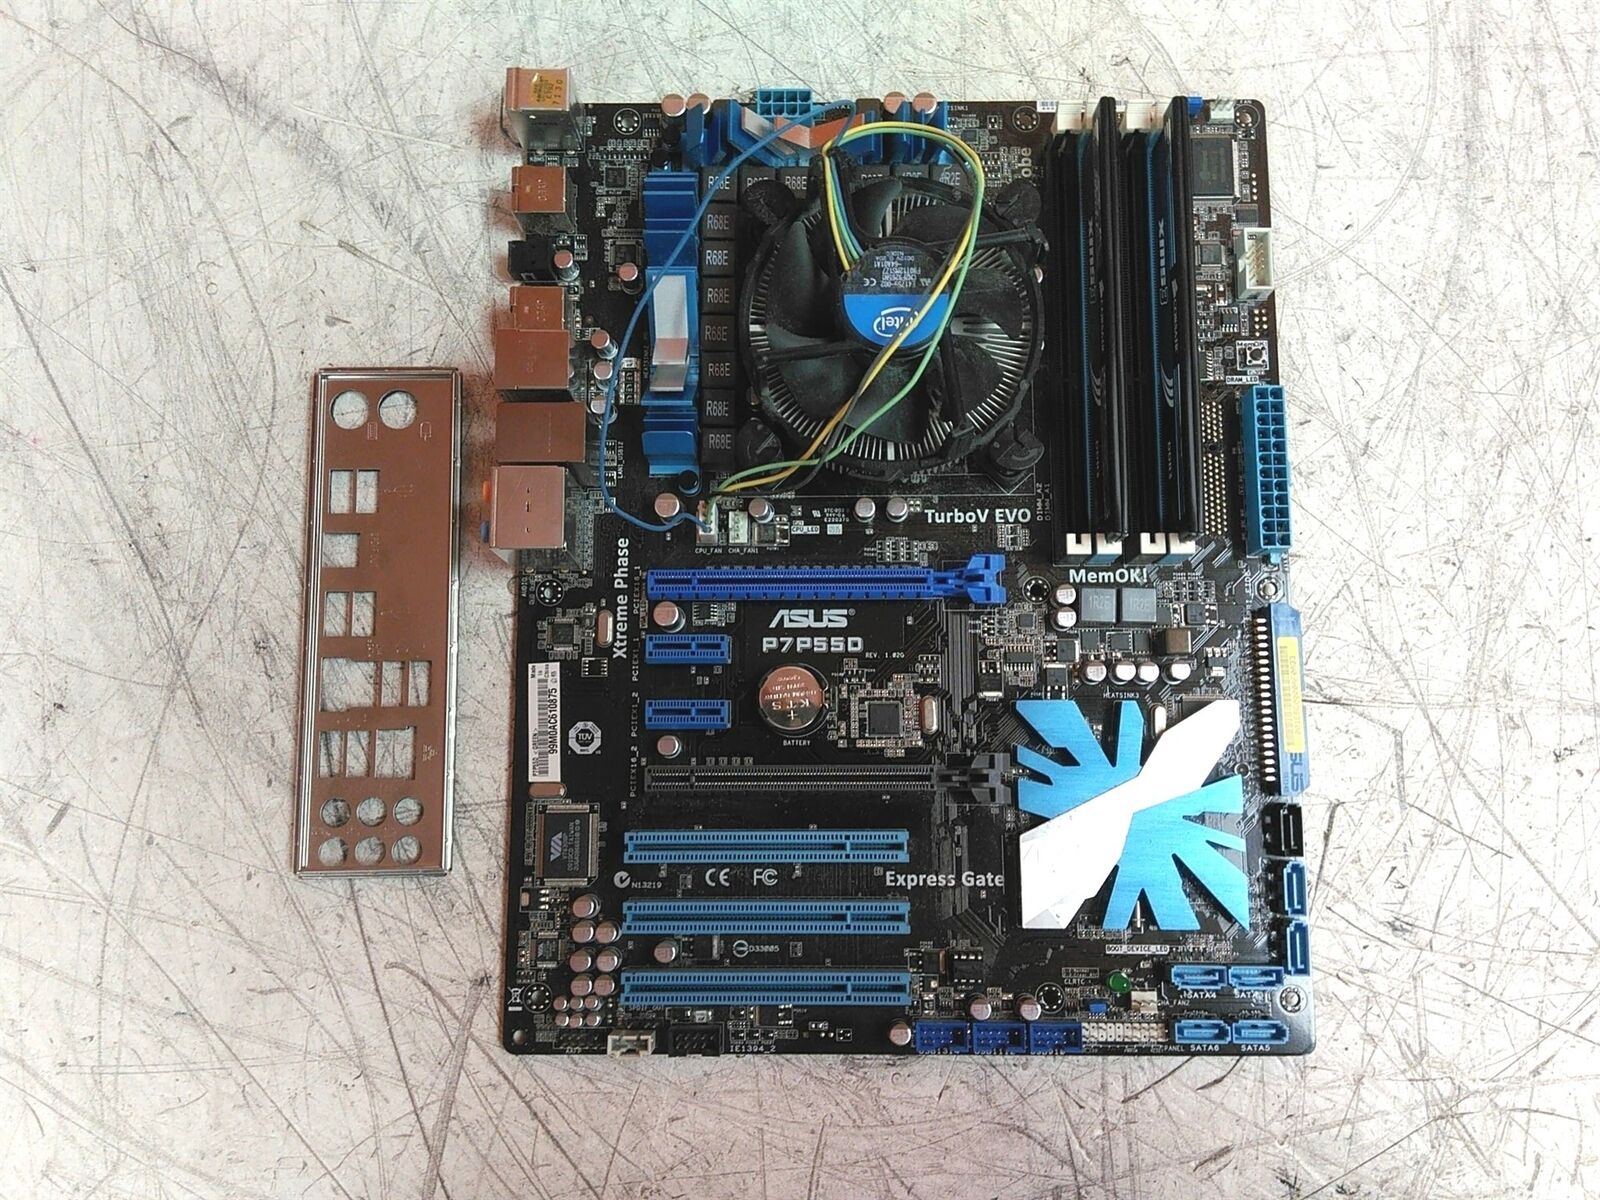 ASUS P7P55D ATX Motherboard Intel i5-750 2.67GHz 4GB 0HD w/ Heatsink & I/O